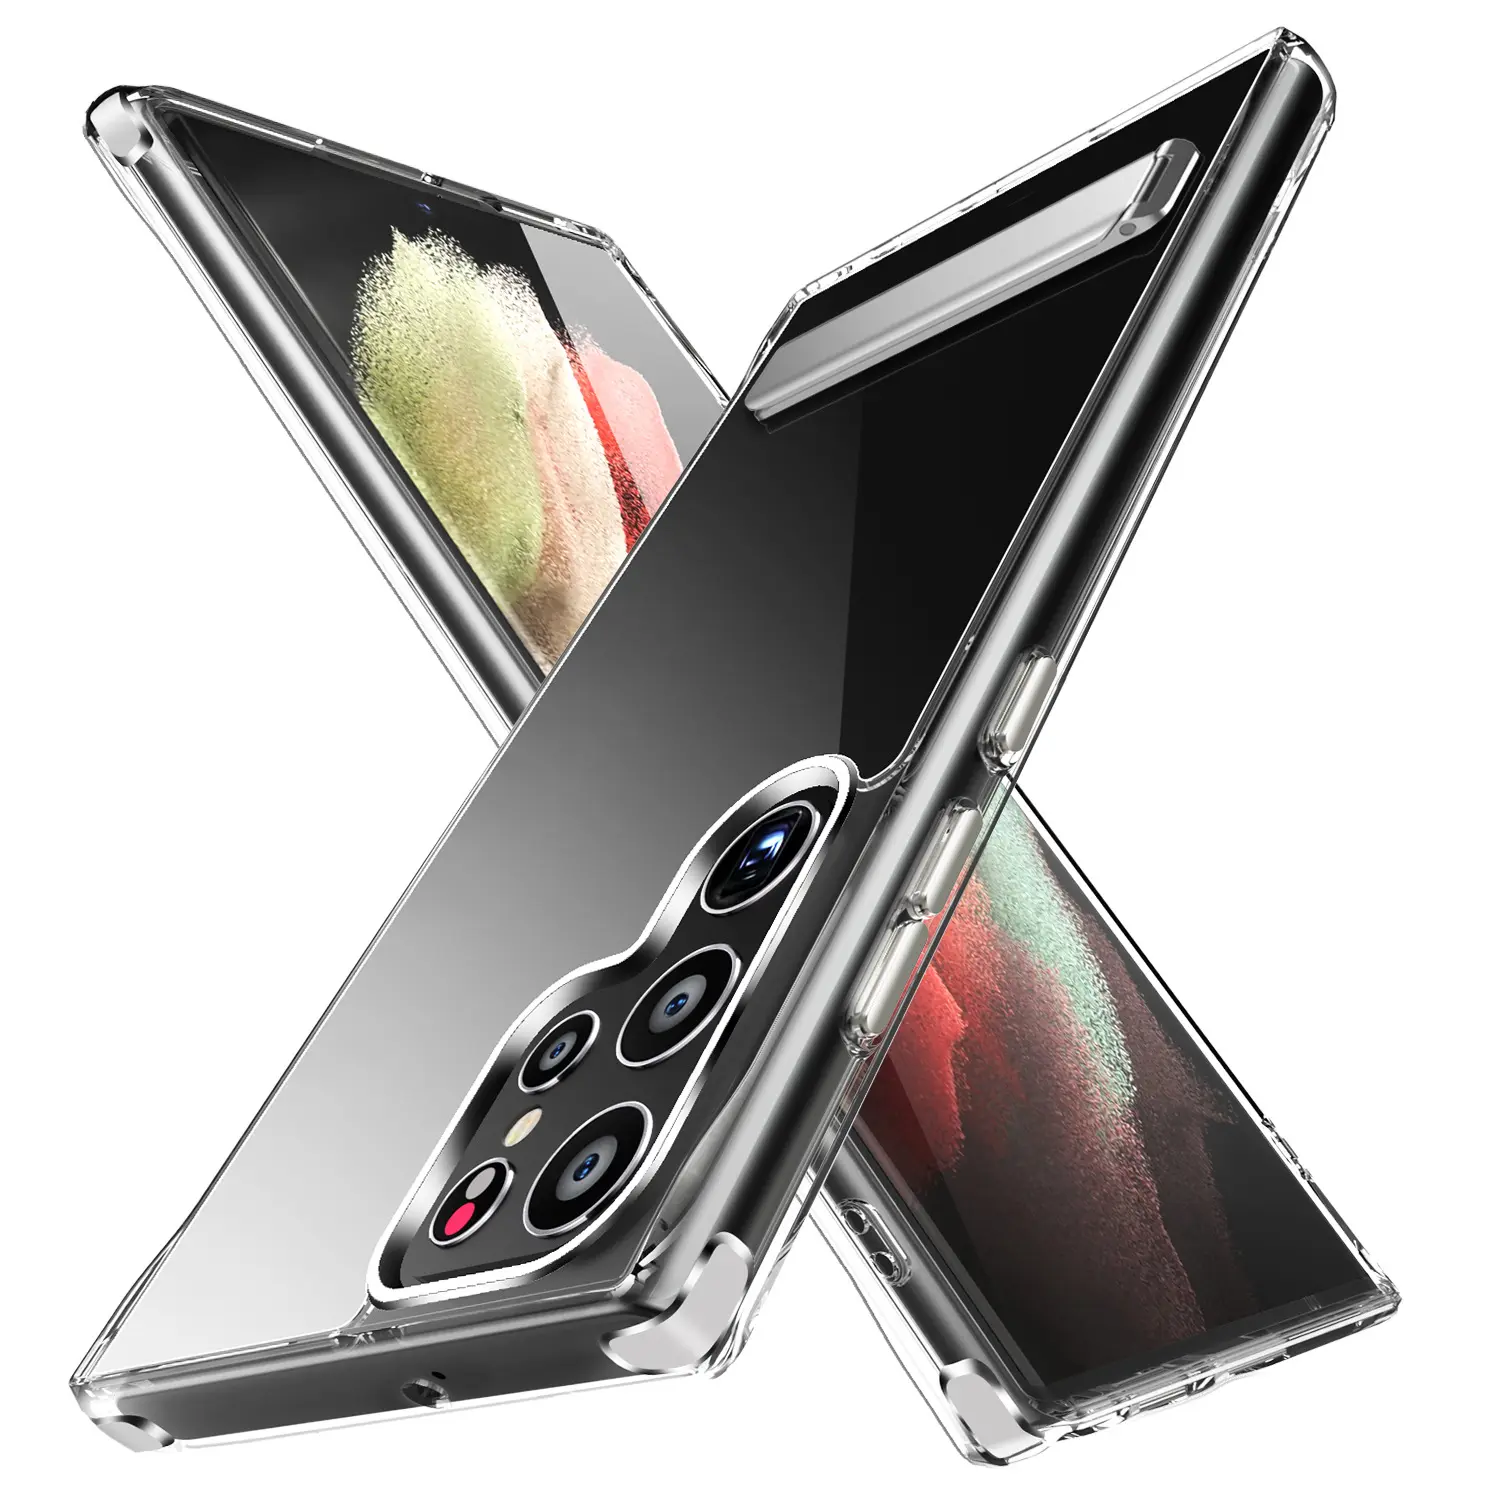 Capa de suporte para celular Samsung Galaxy S23 Ultra, capa transparente para celular Samsung Galaxy S23 Plus, ideal para uso em PCs